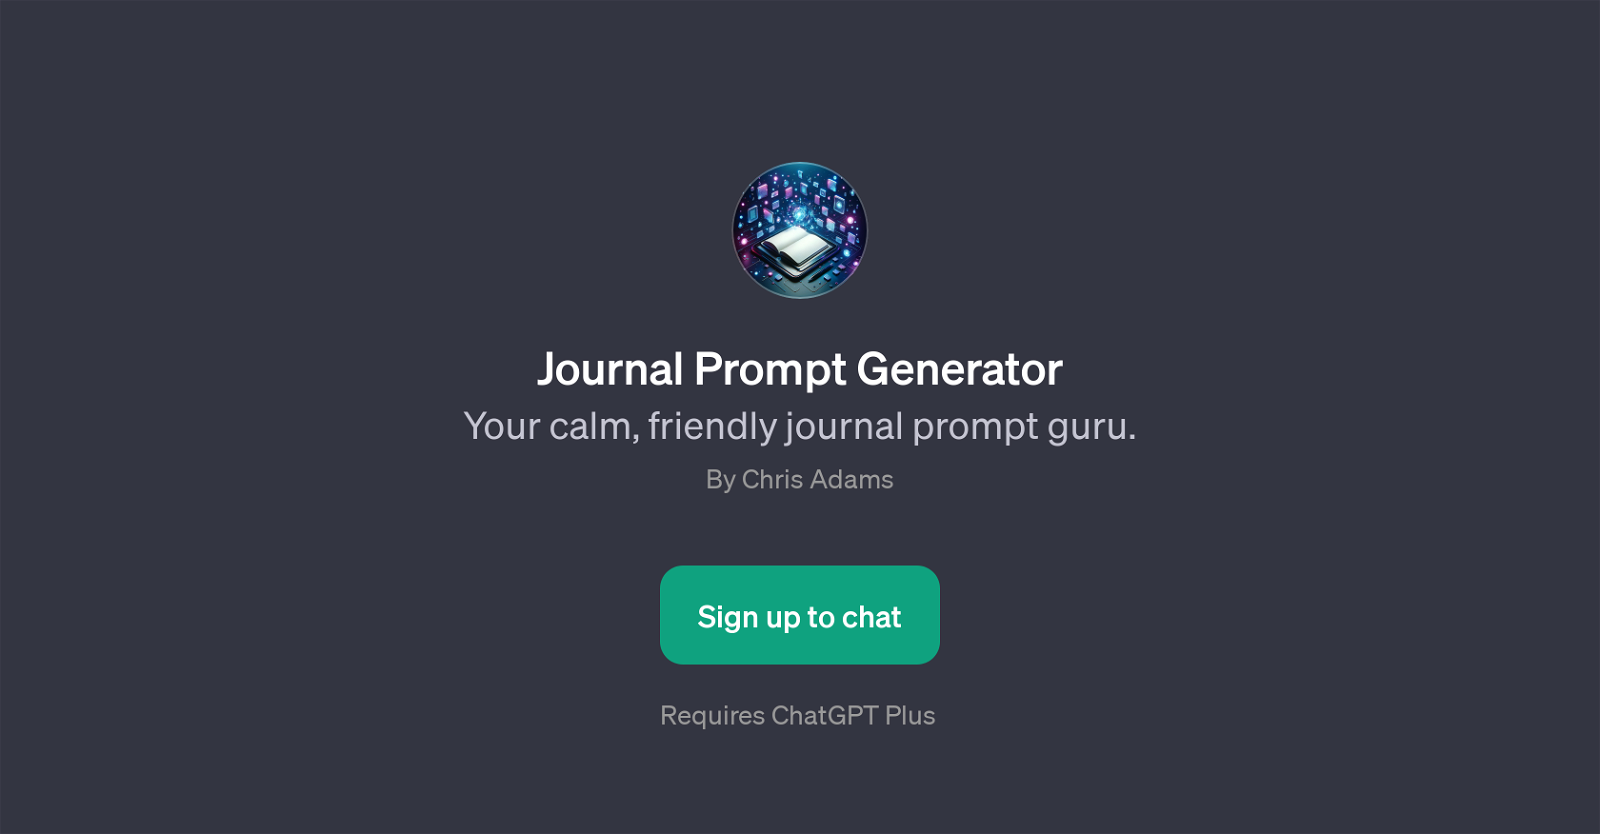 Journal Prompt Generator website